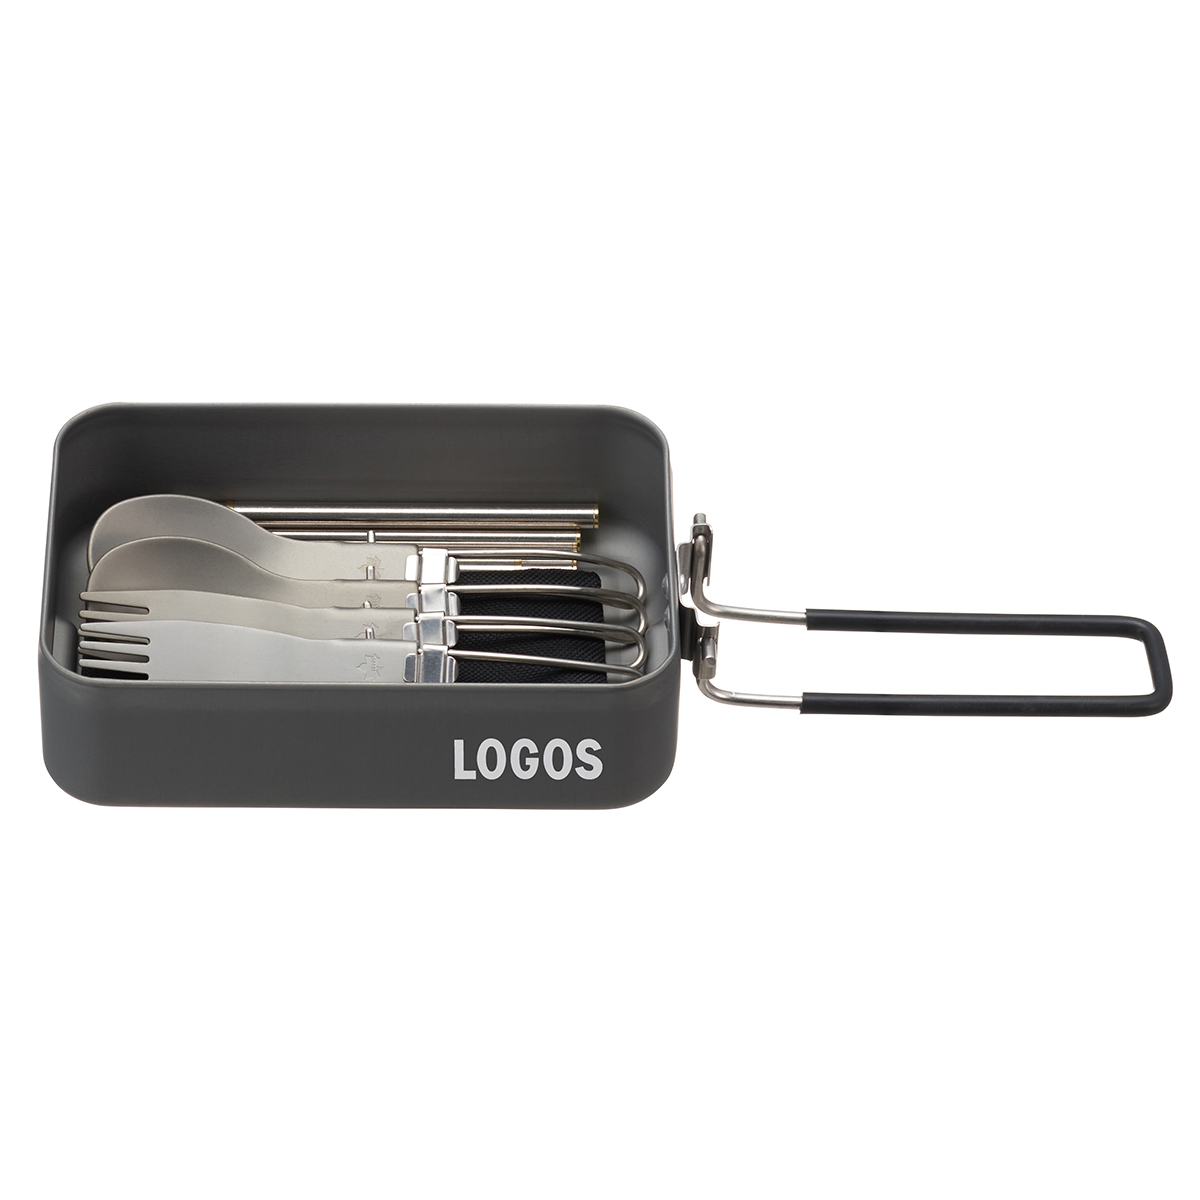 LOGOS メスキット|ギア|キッチンツール|調理器具|製品情報|ロゴス